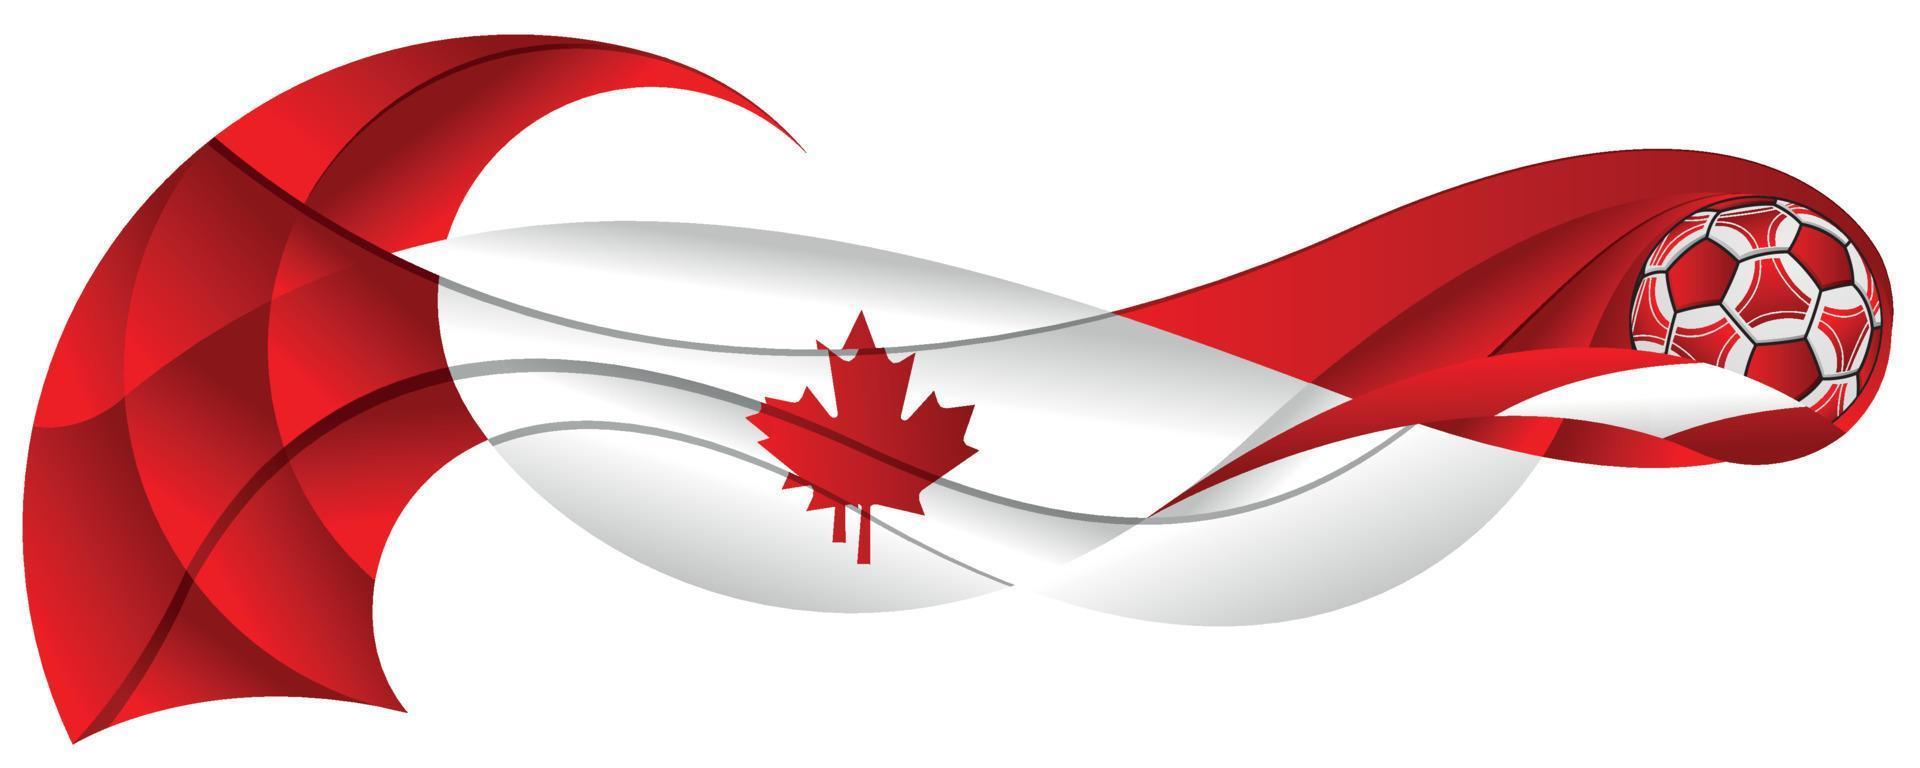 bola de futebol branca e vermelha deixando uma trilha ondulada abstrata com as cores da bandeira canadense em um fundo branco vetor